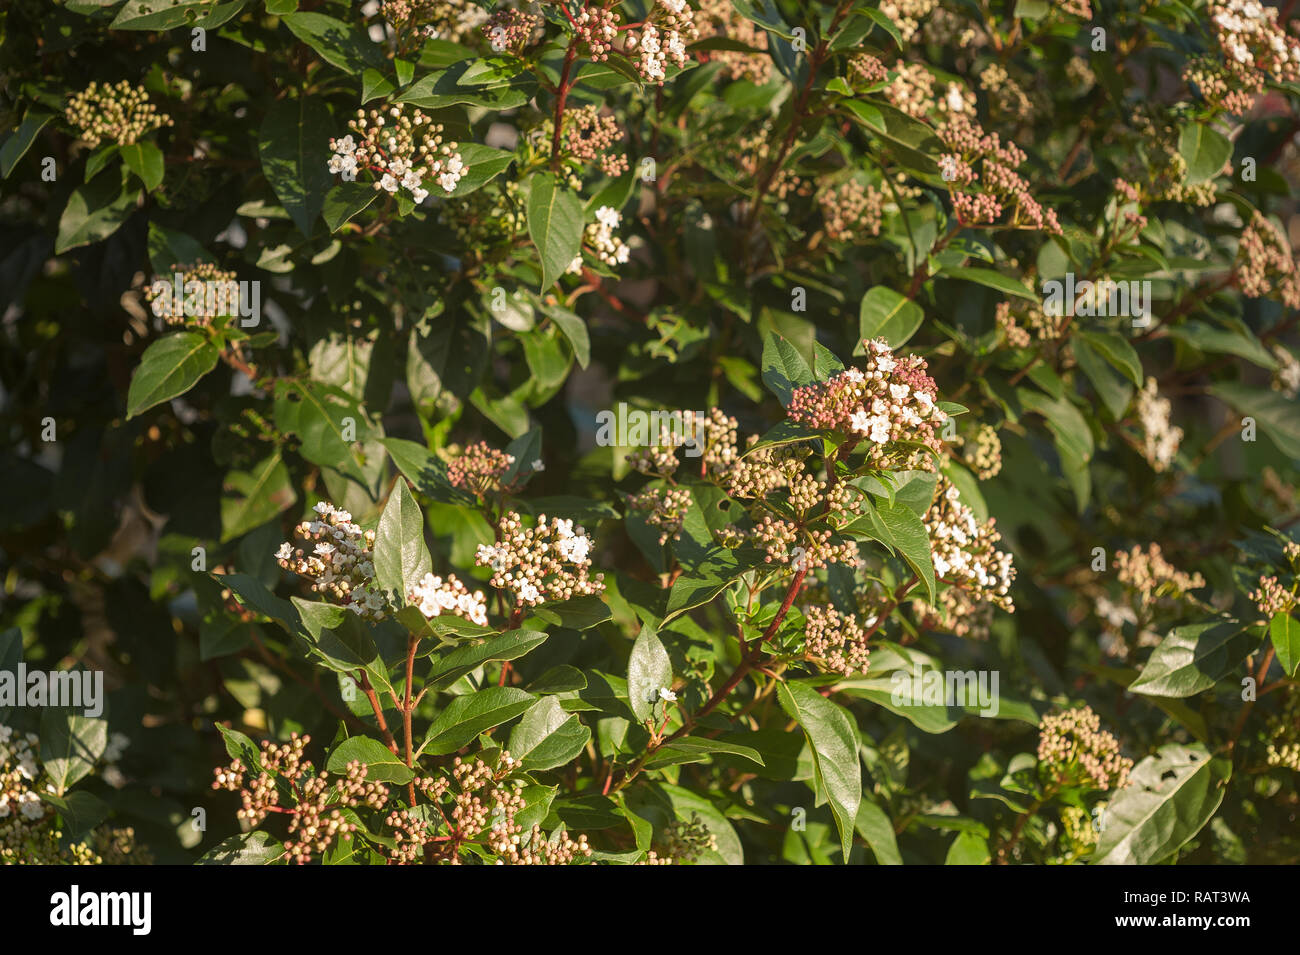 Fioritura invernale arbusto pallon di maggio con piccolo profondo delicato gemme rosa e blushed fiori bianchi, Viburnum tinus, profondo foglie verdi Foto Stock